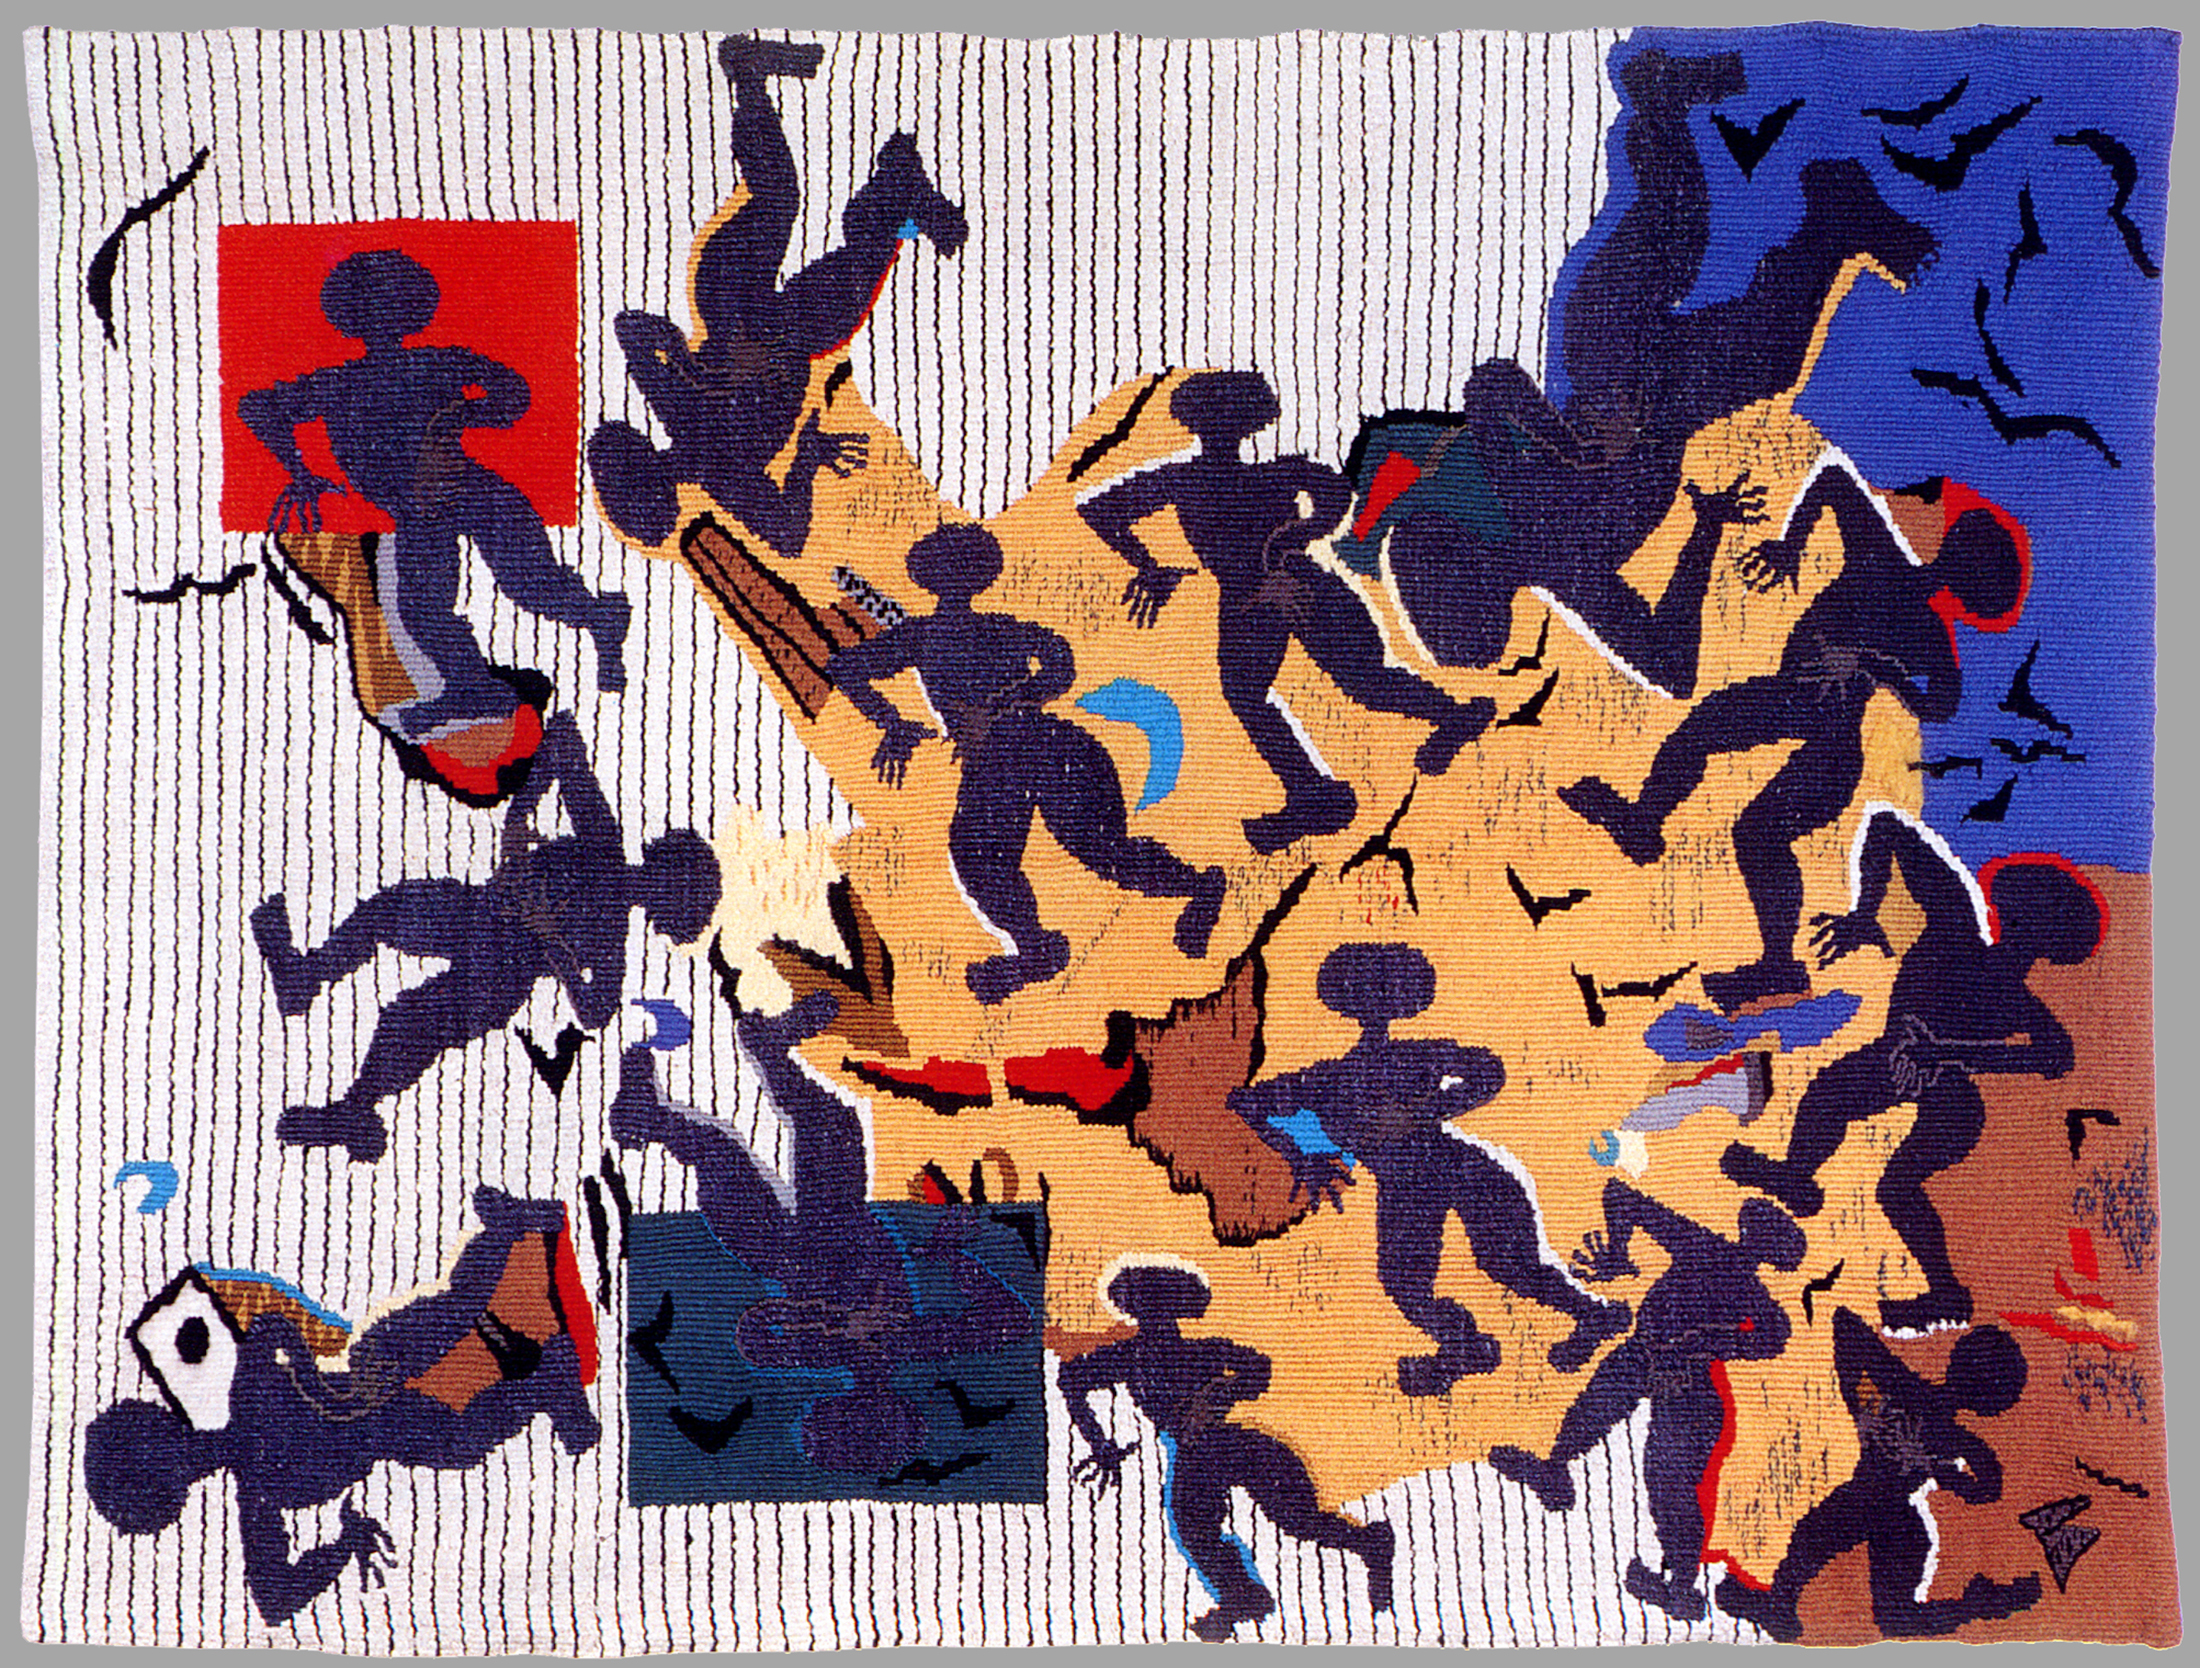 FRUCHTBARKEITSTANZ, 110 x 150 cm, 1991, Privatsammlung, Foto: Artner